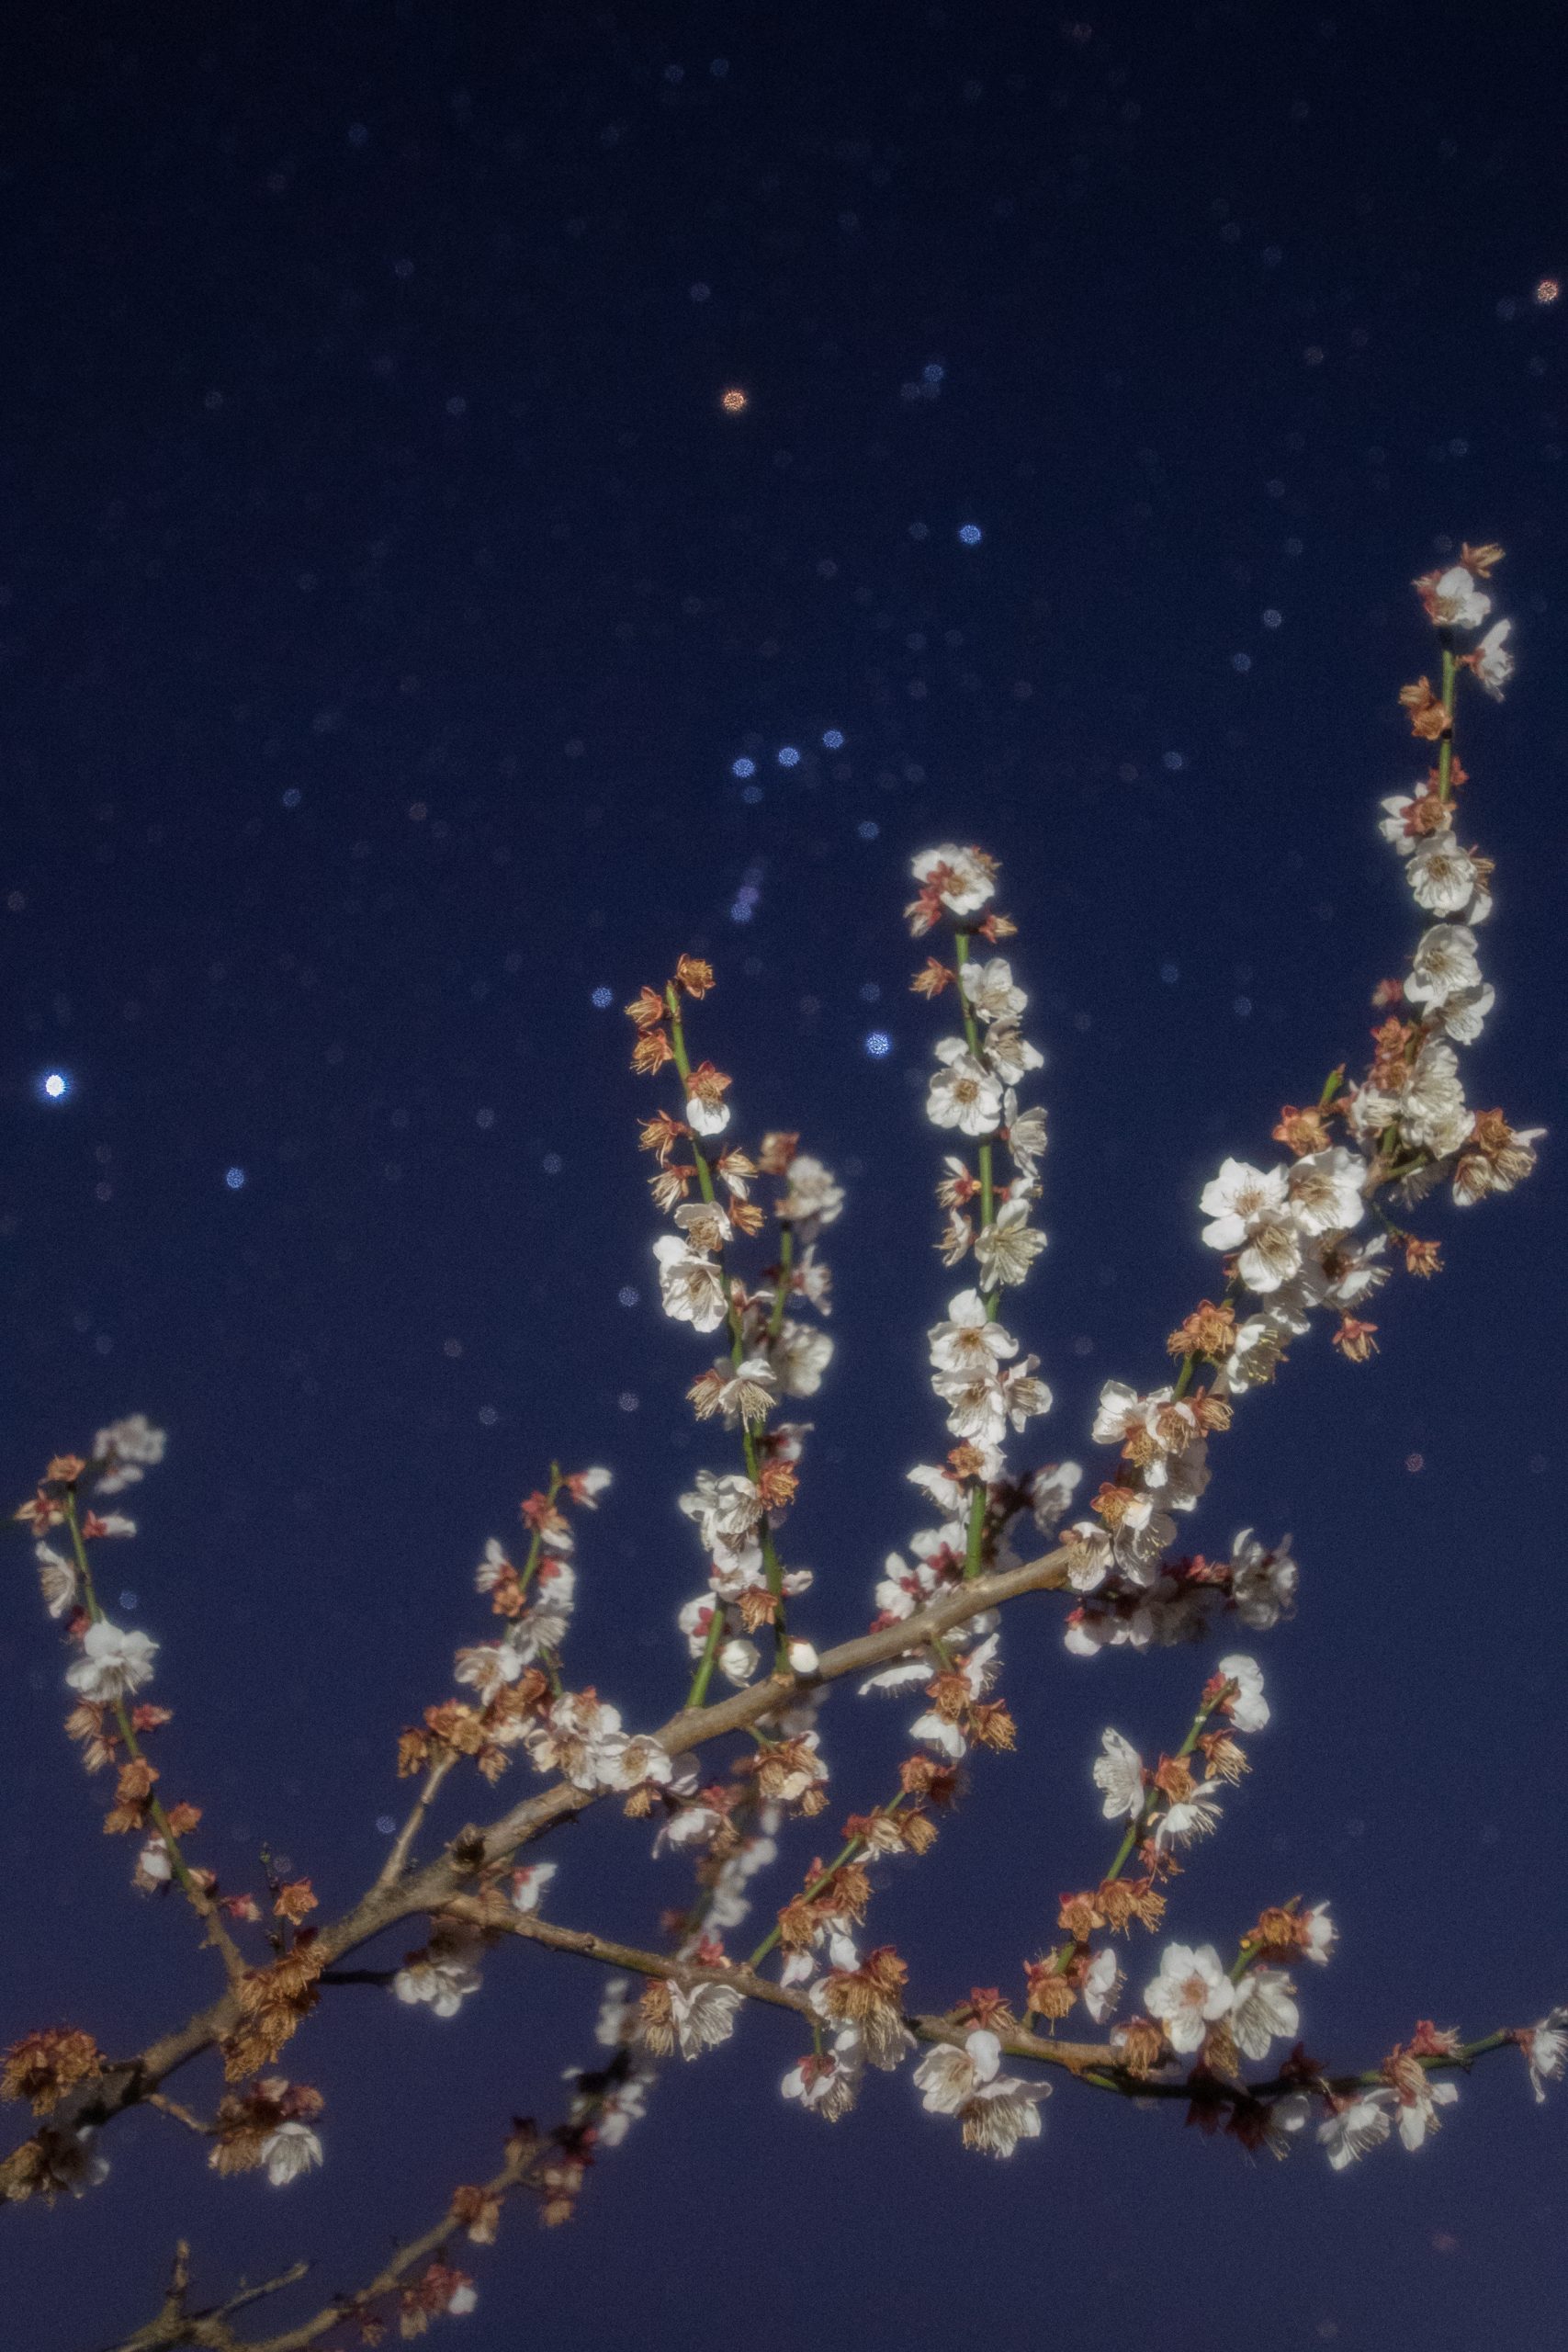 冬の星座を背景に、南部梅林の満開の梅を楽しむ